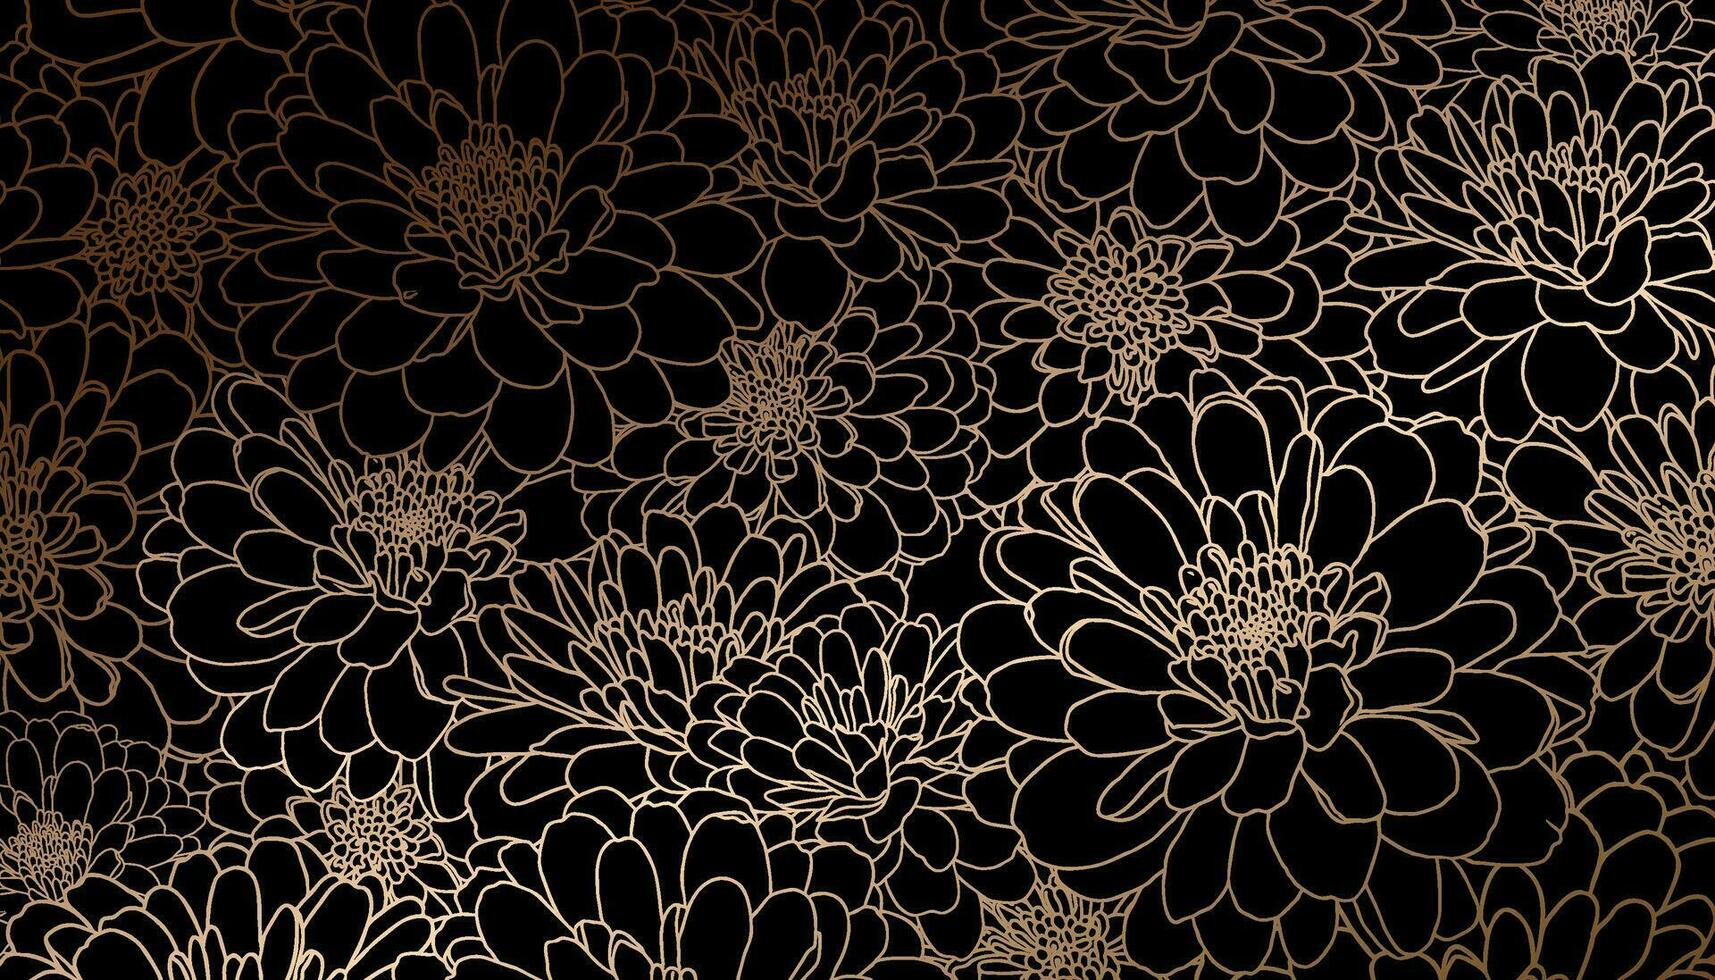 d'oro crisantemo fiori nel mano disegnato linea arte su nero sfondo. decorativo Stampa per sfondi, involucri, nozze inviti, saluti, fondali. vettore